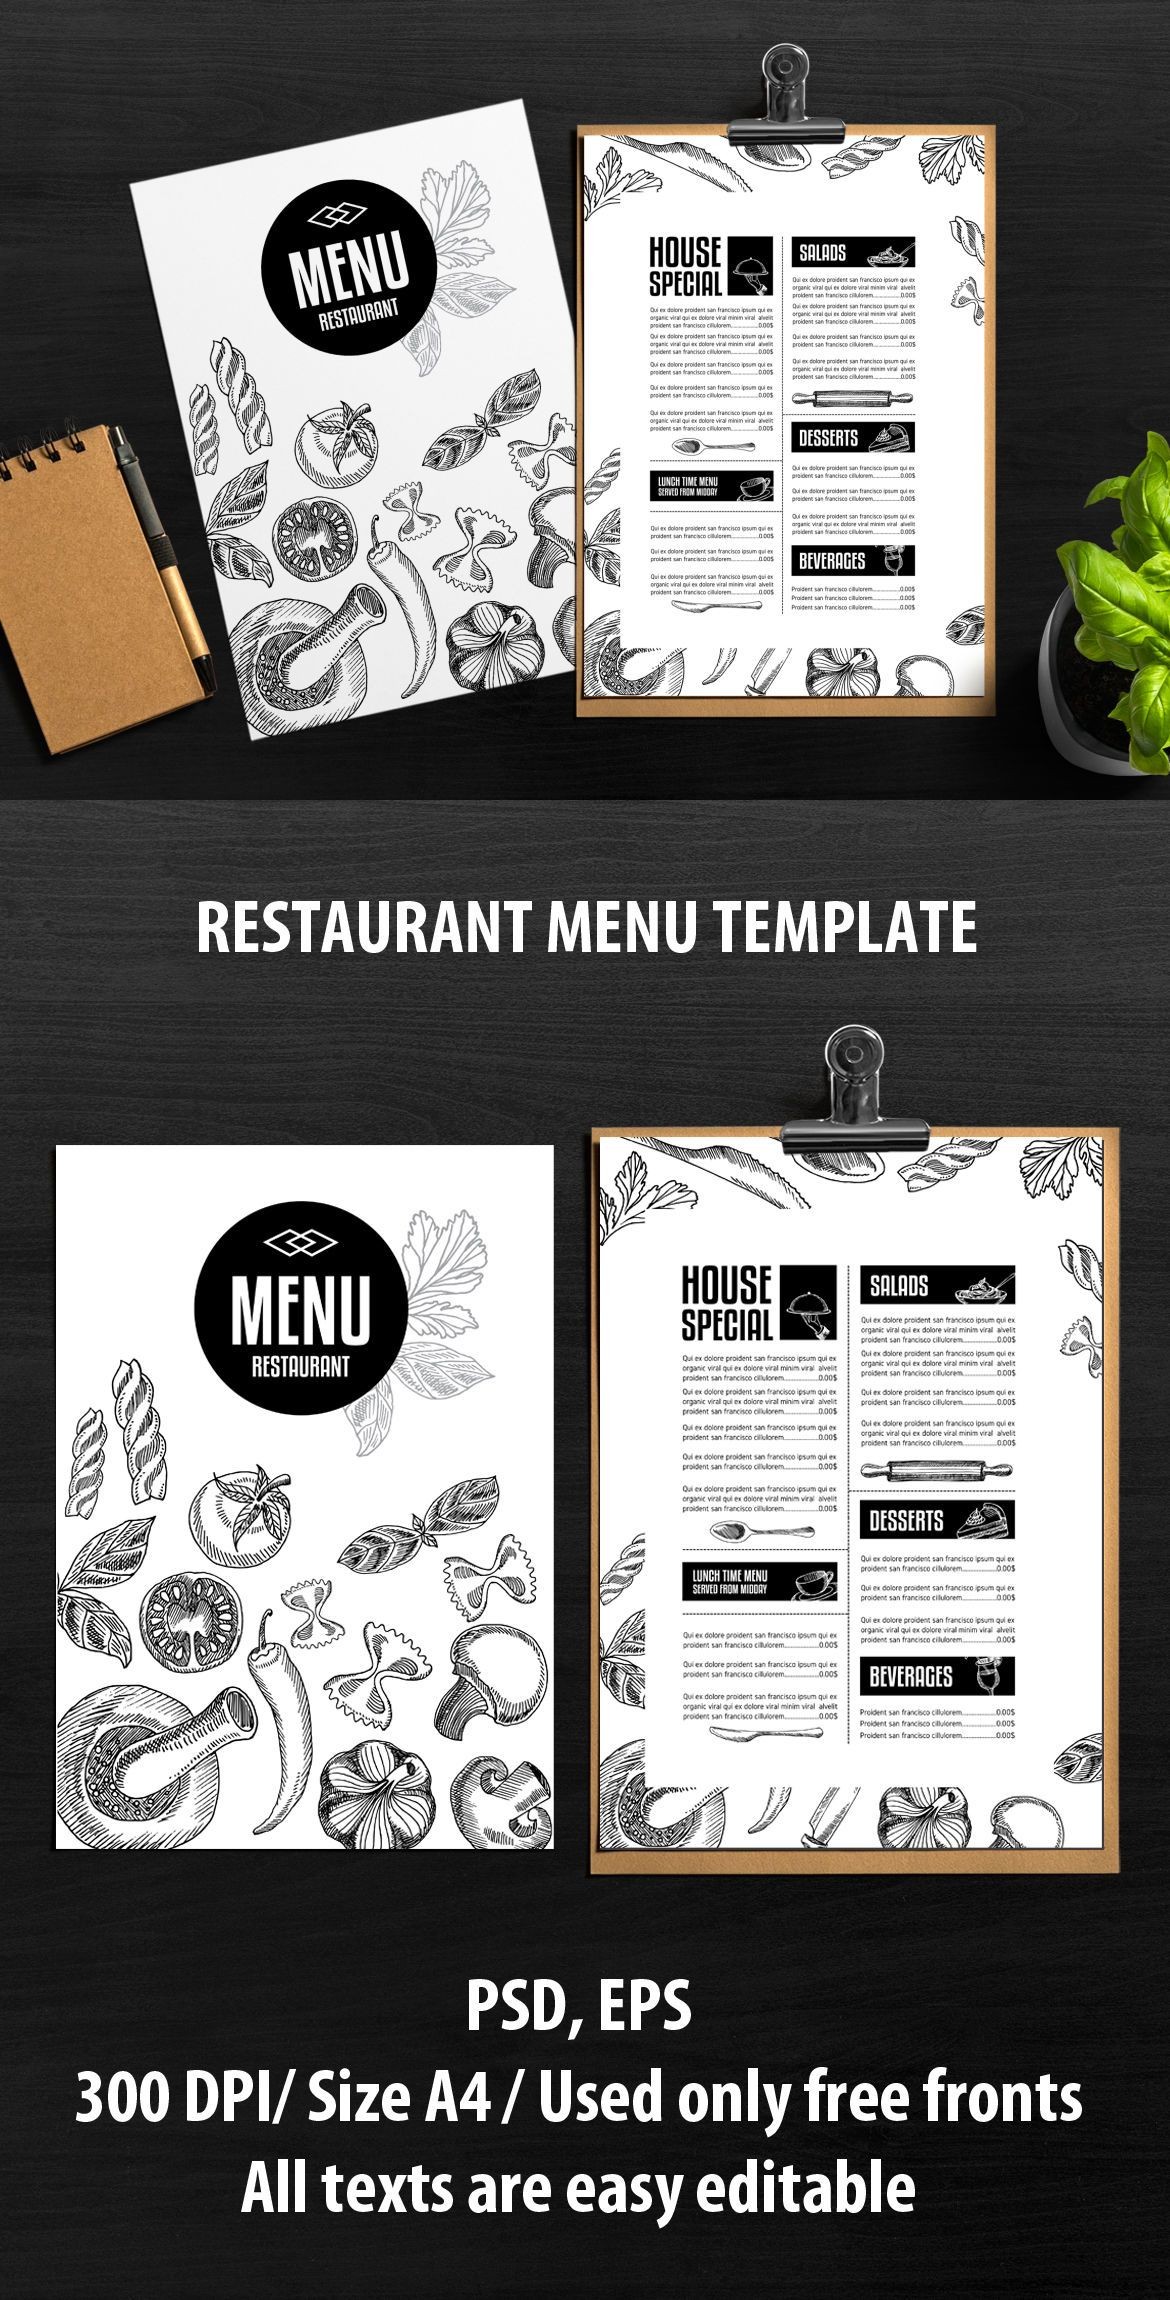 Food Menu Template Vector EPS PSD Design Pinterest Eps Psd